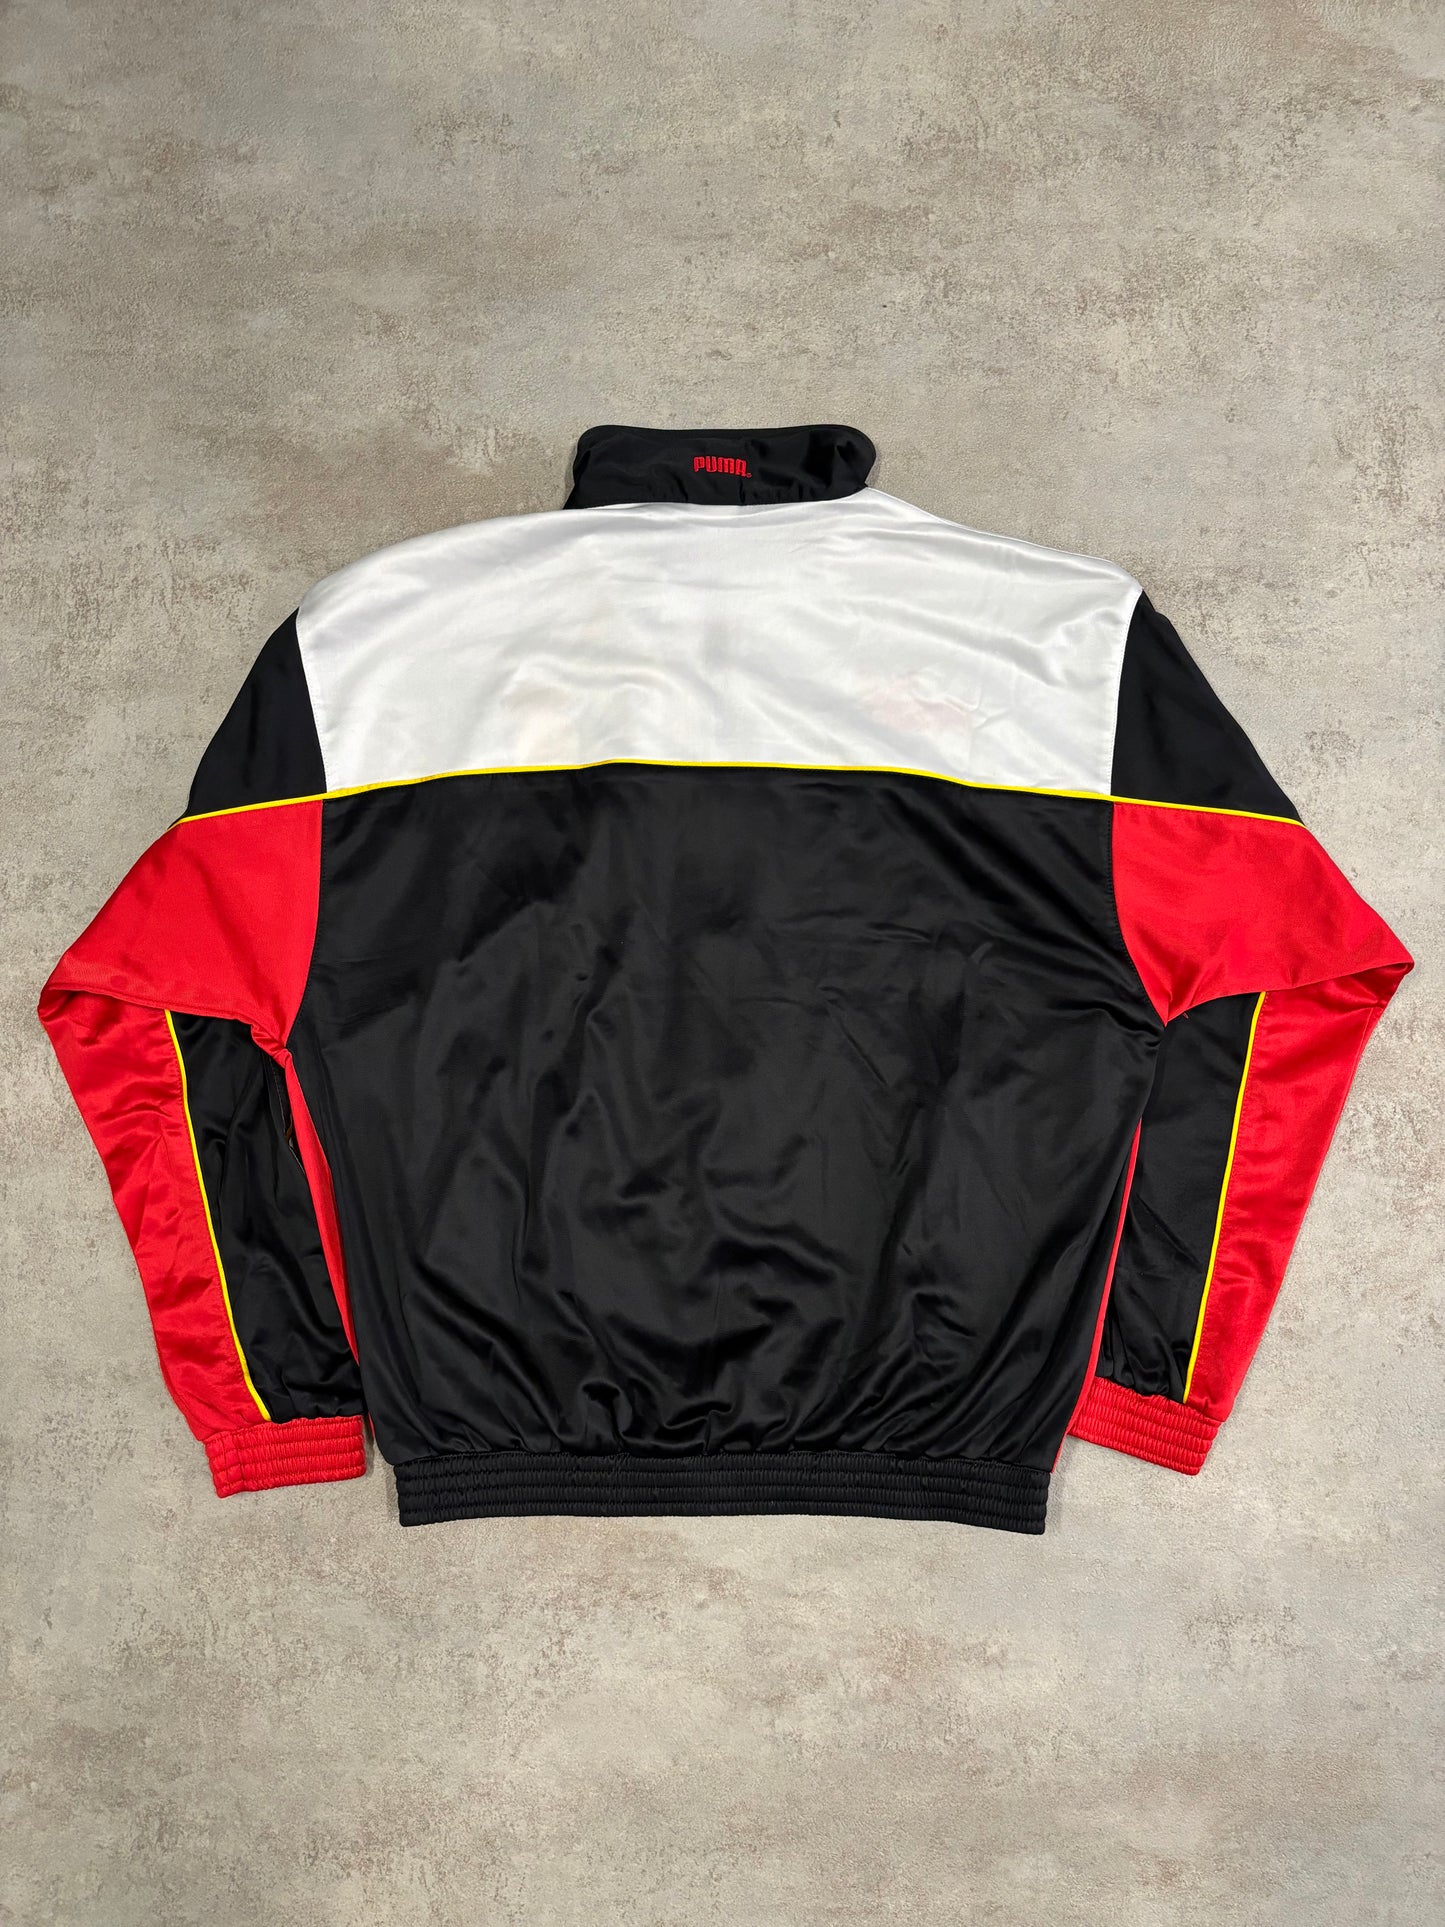 Puma Catalan National Team Jacket 1995-1998 Vintage - M